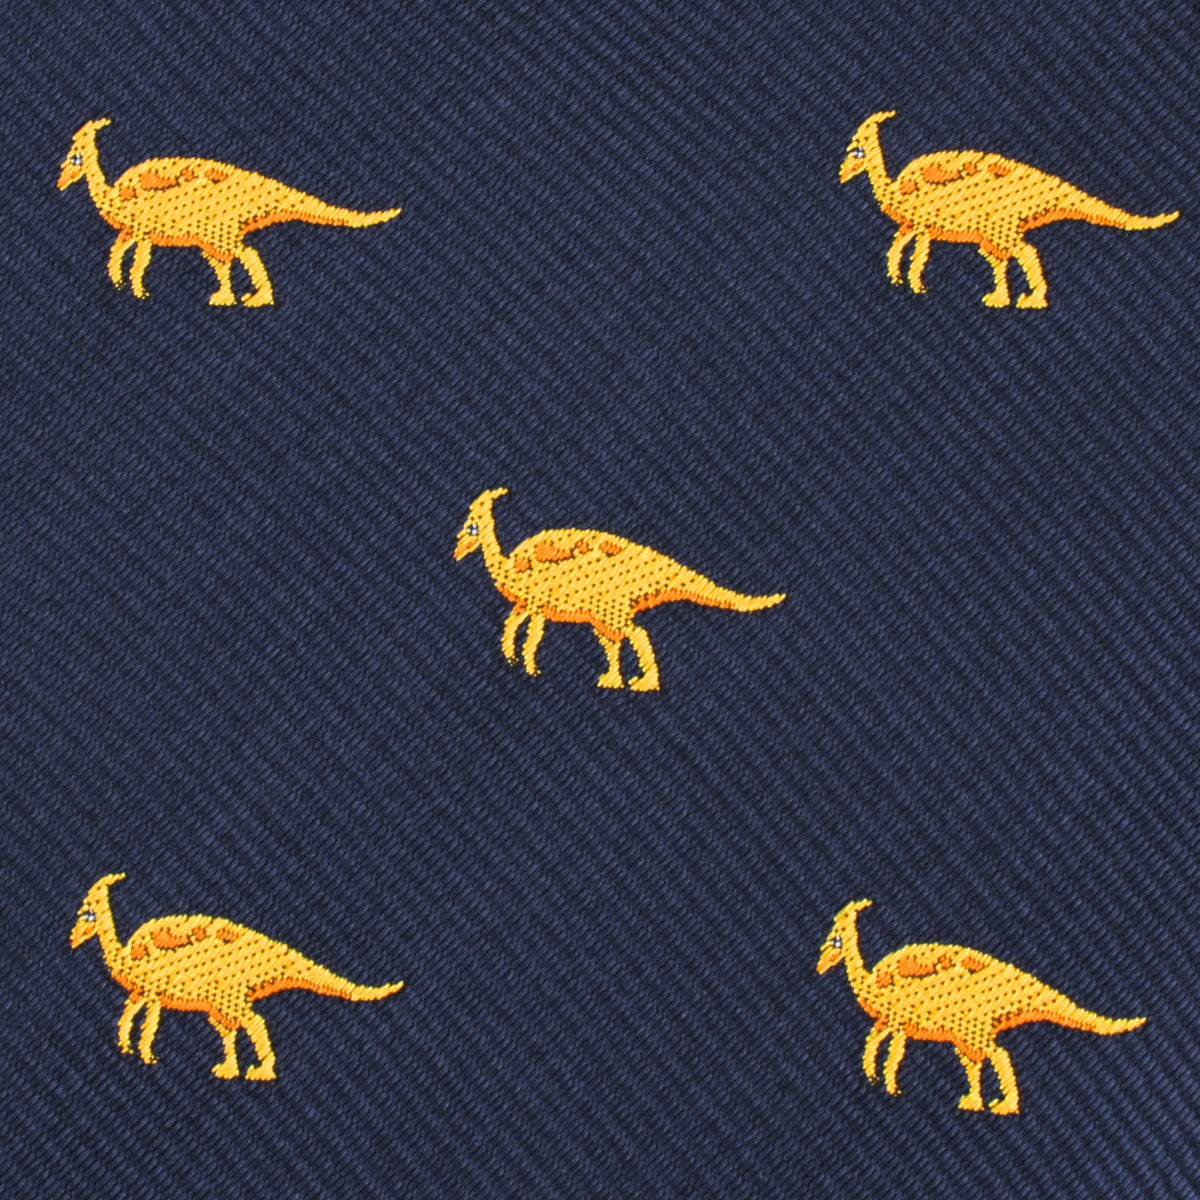 Parasaurolophus Dinosaurs Self Bow Tie Fabric